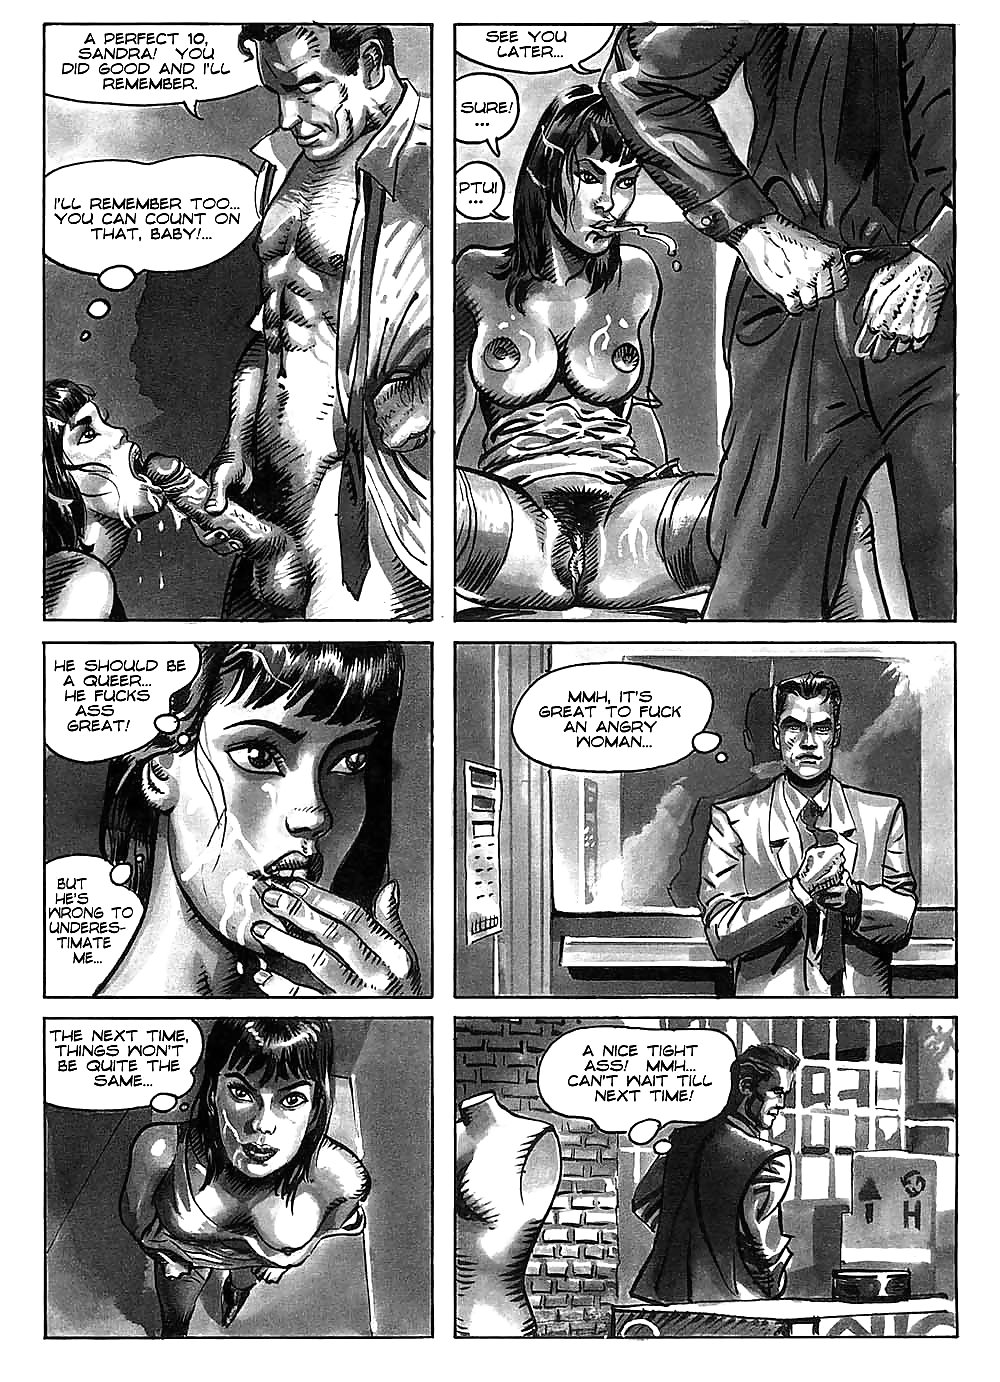 Hot comics 52 #19539739